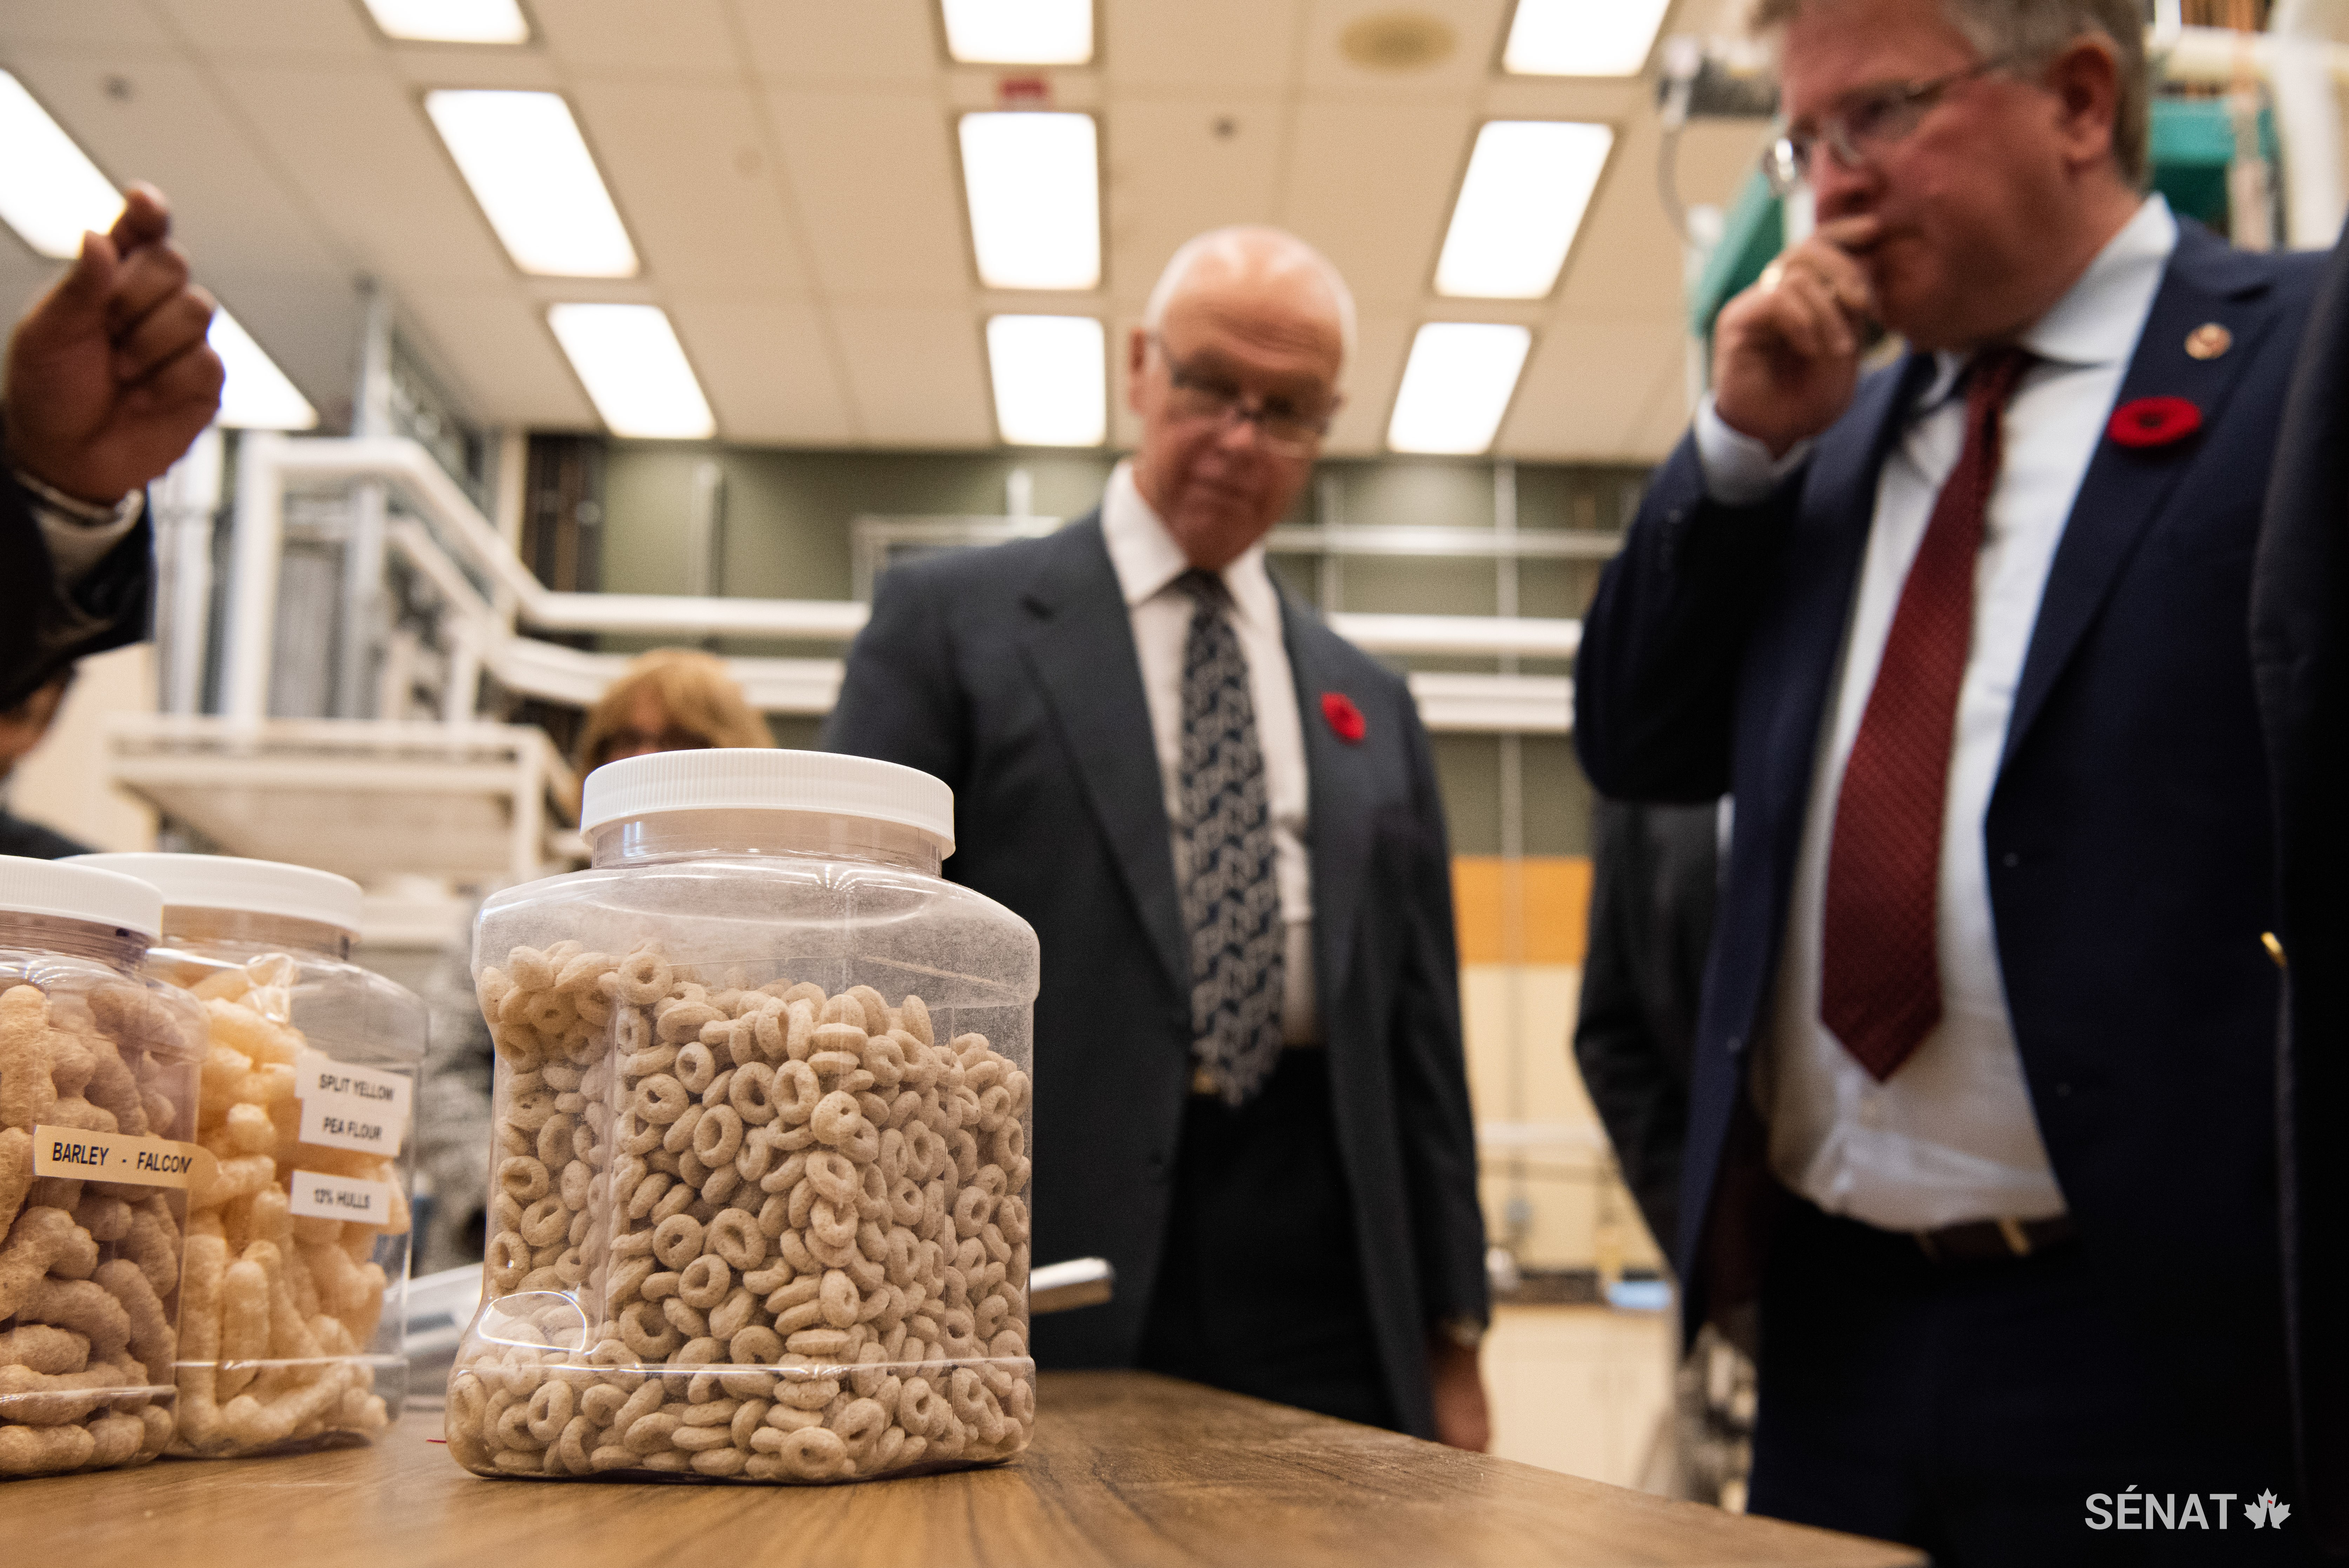 Les grains canadiens permettent de créer une variété de produits. Reconnaissez-vous certaines de ces formes?